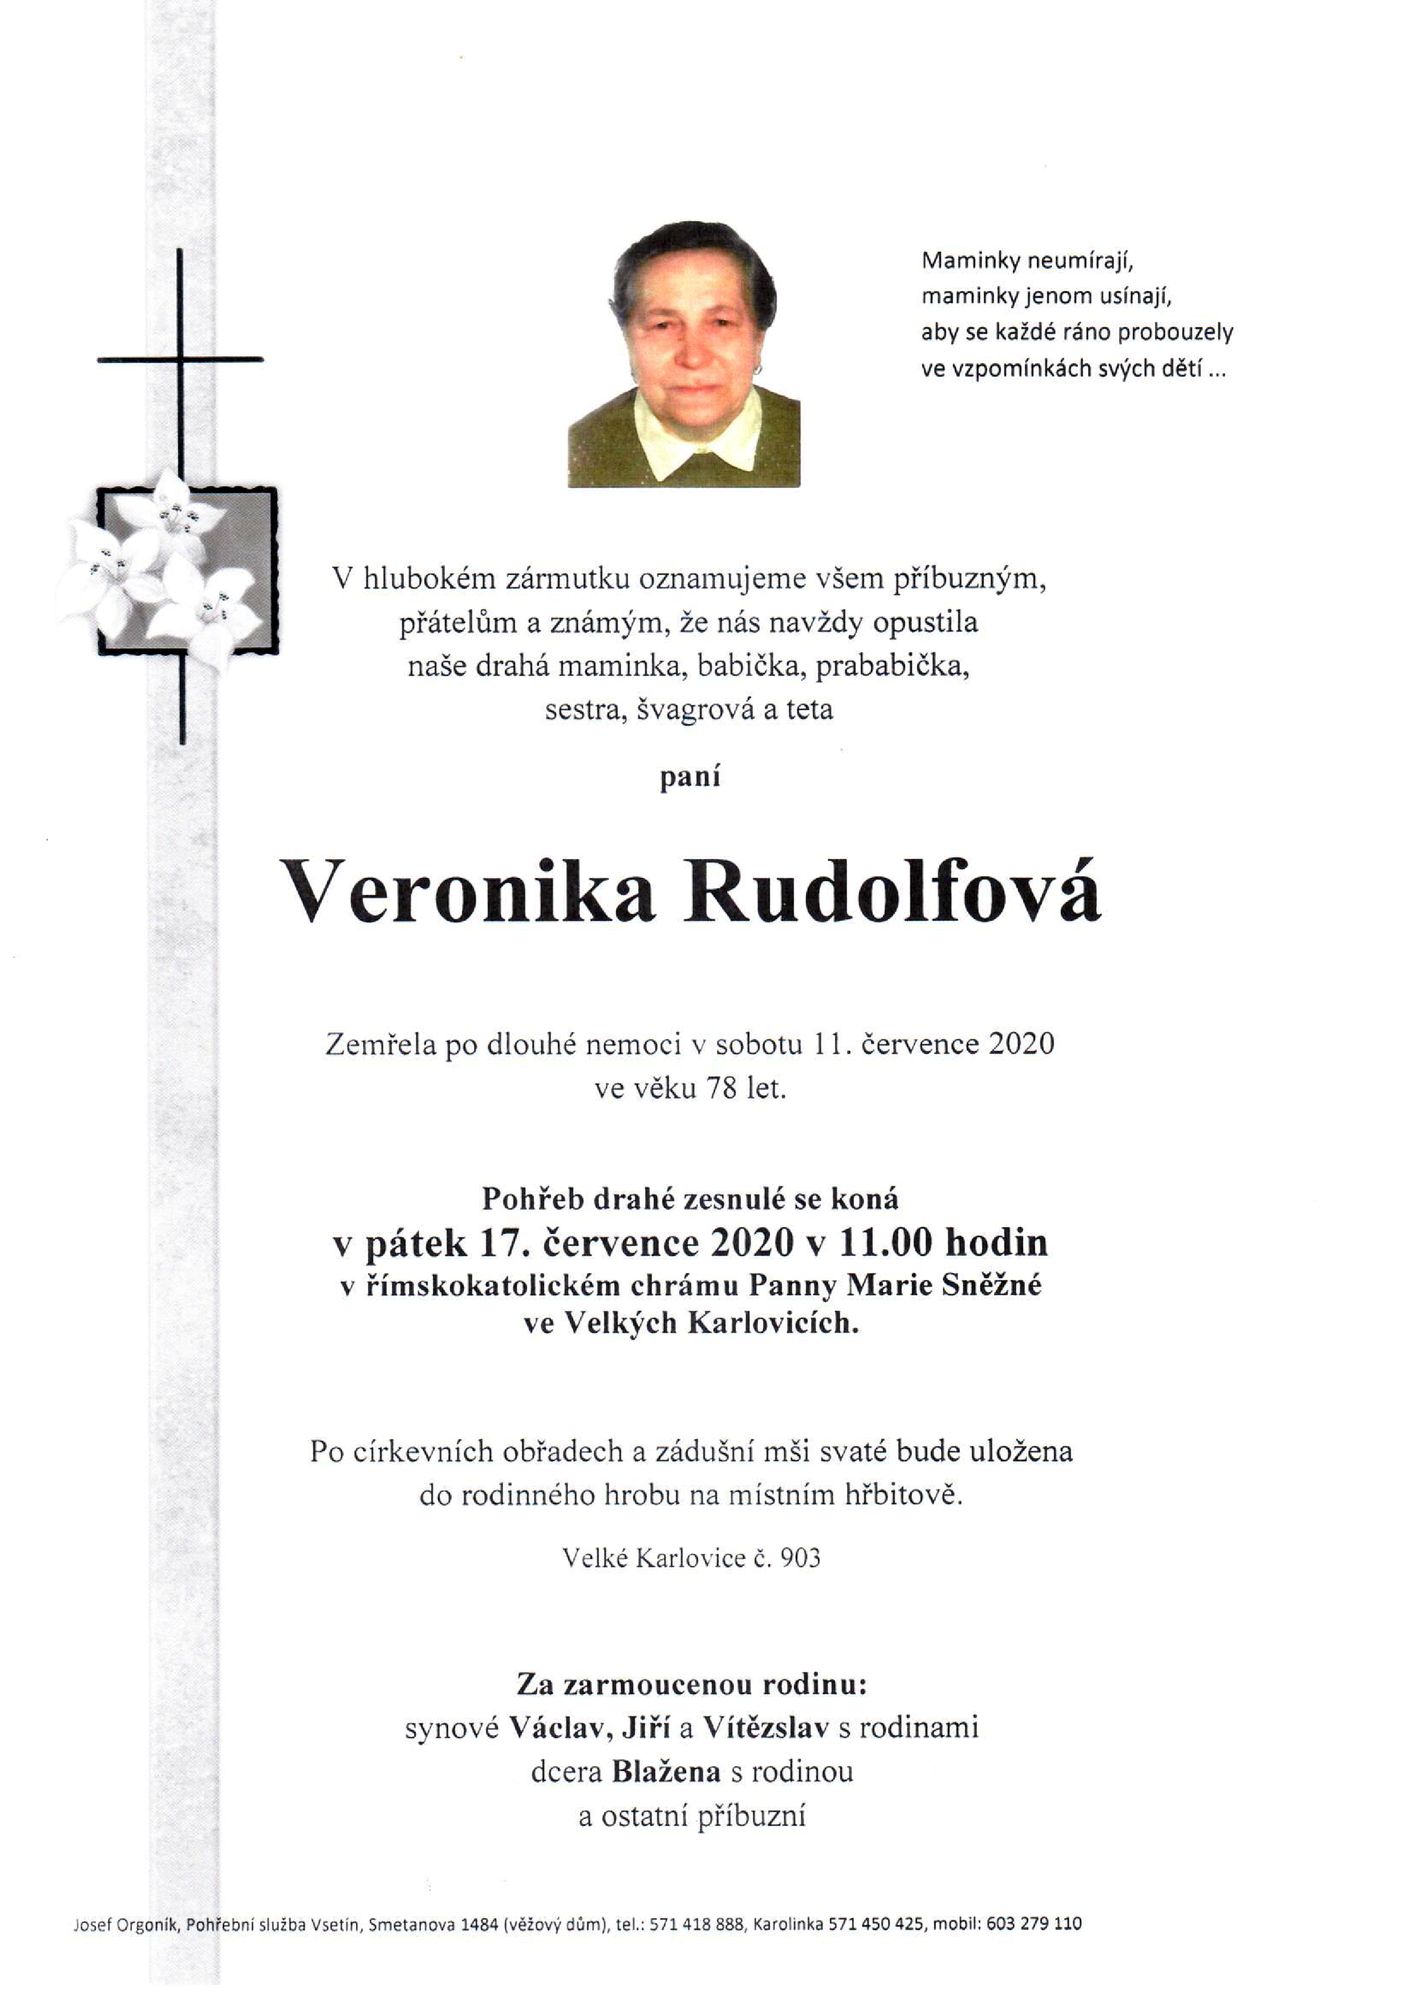 Veronika Rudolfová